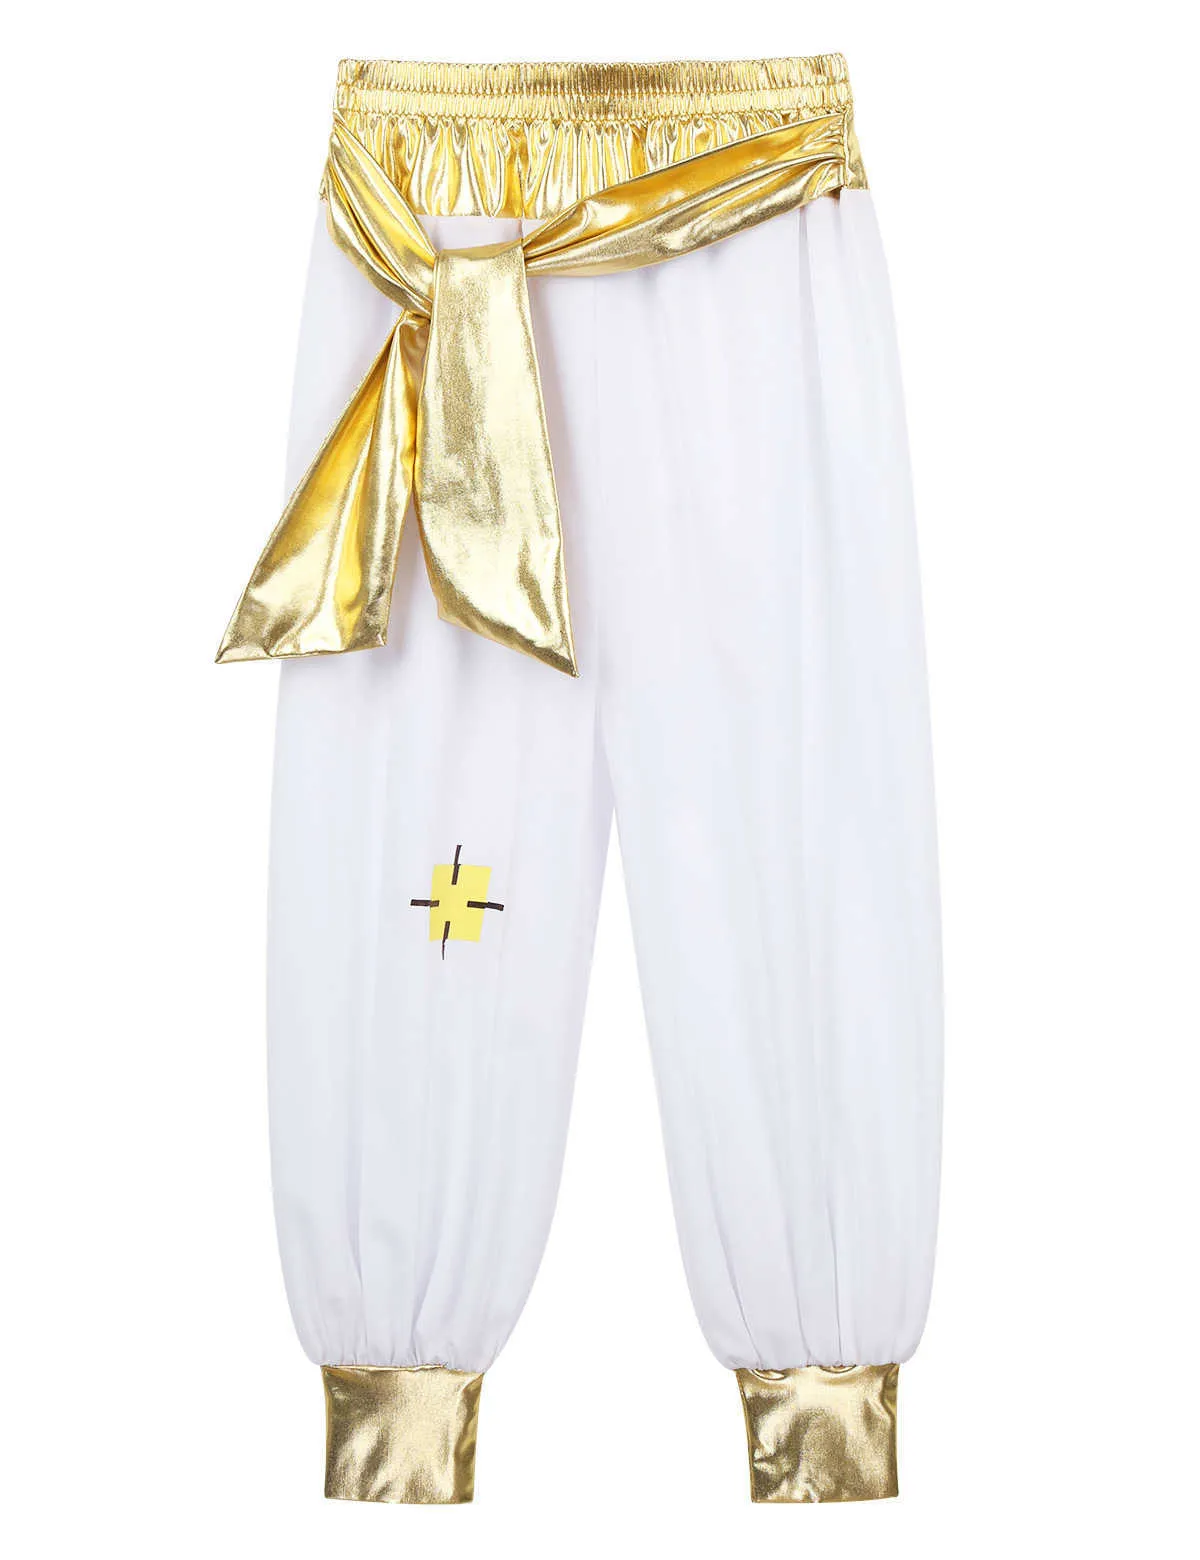 Kinderen Jongens Fancy Arabian Prince Costumes Cap Sleeves Vest met Broek voor Halloween Cosplay Fairy Parties Verkleed Q0910